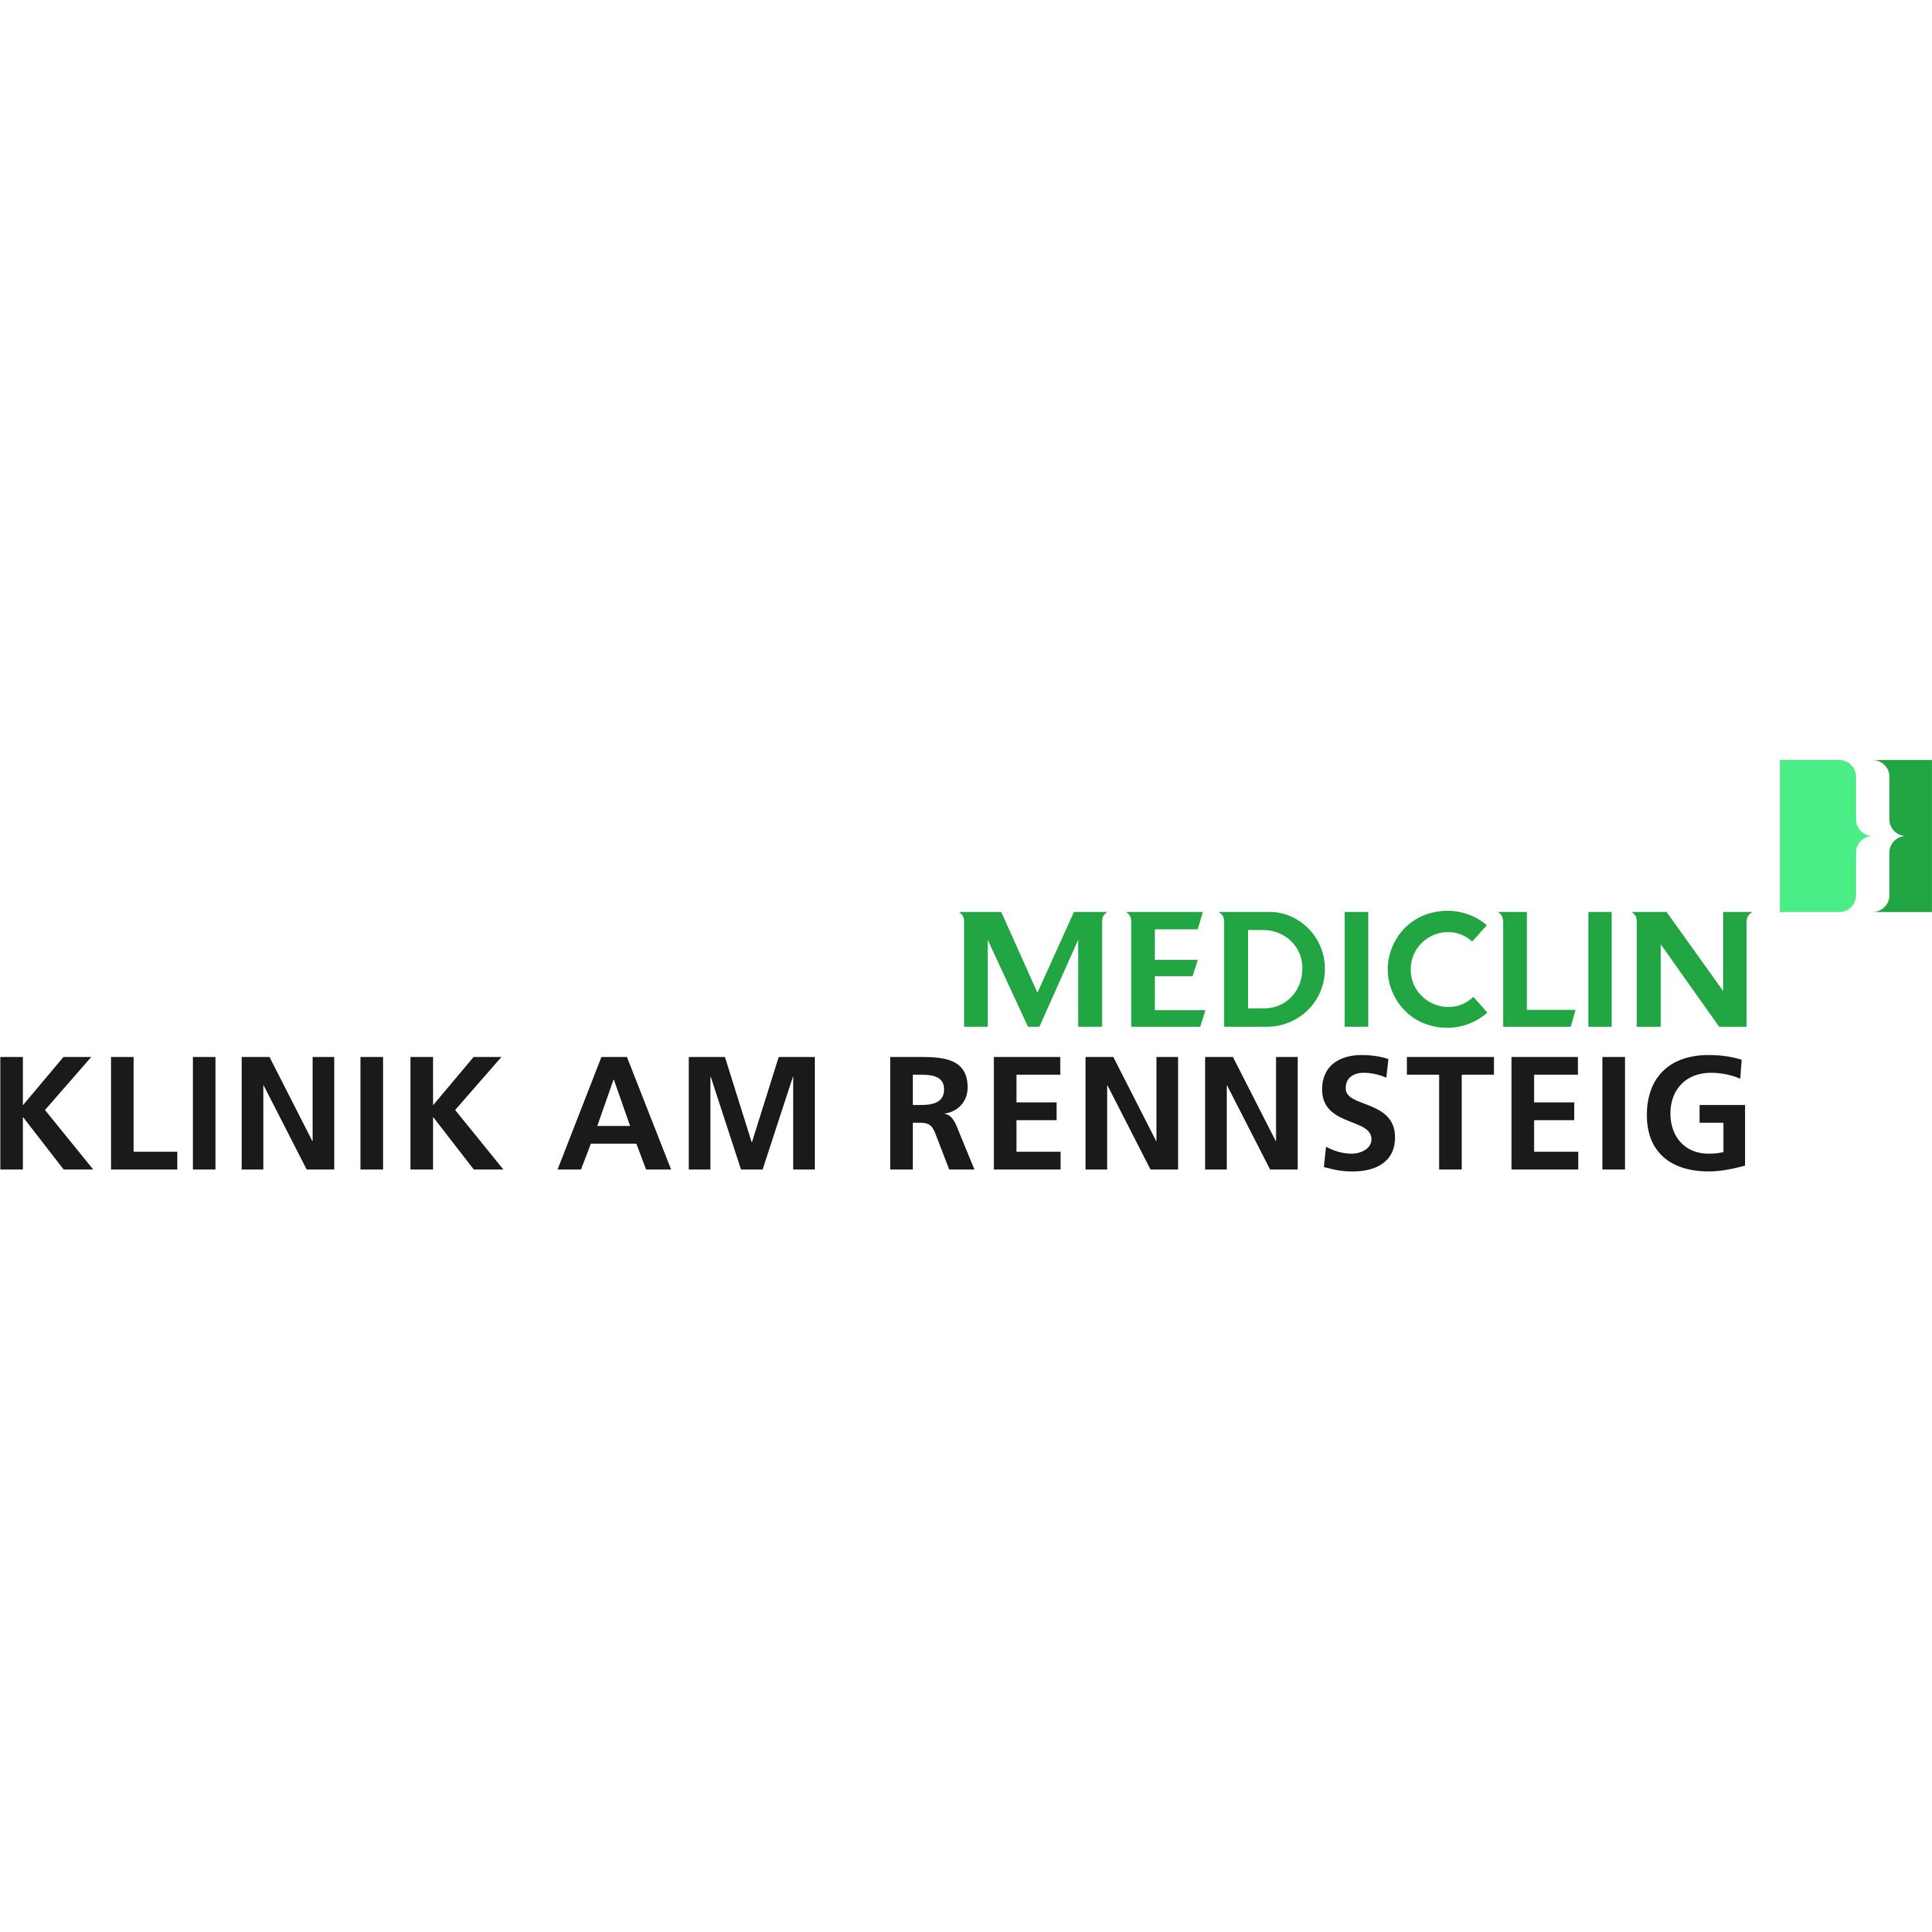 MEDICLIN Klinik am Rennsteig Logo